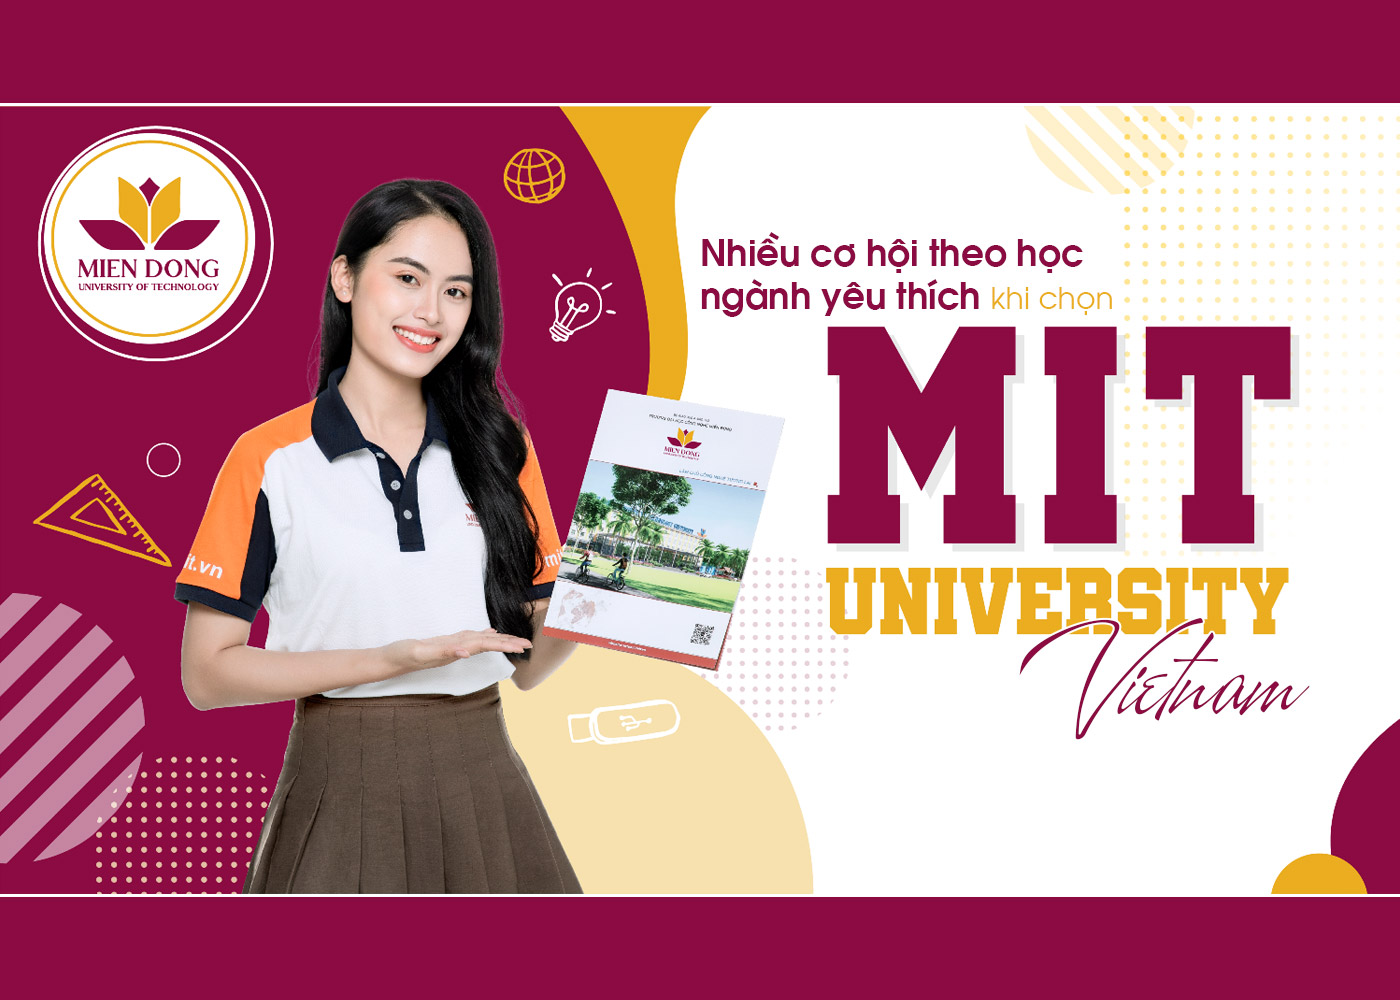 Nhiều cơ hội theo học ngành yêu thích khi chọn MIT University Vietnam - Ảnh 1